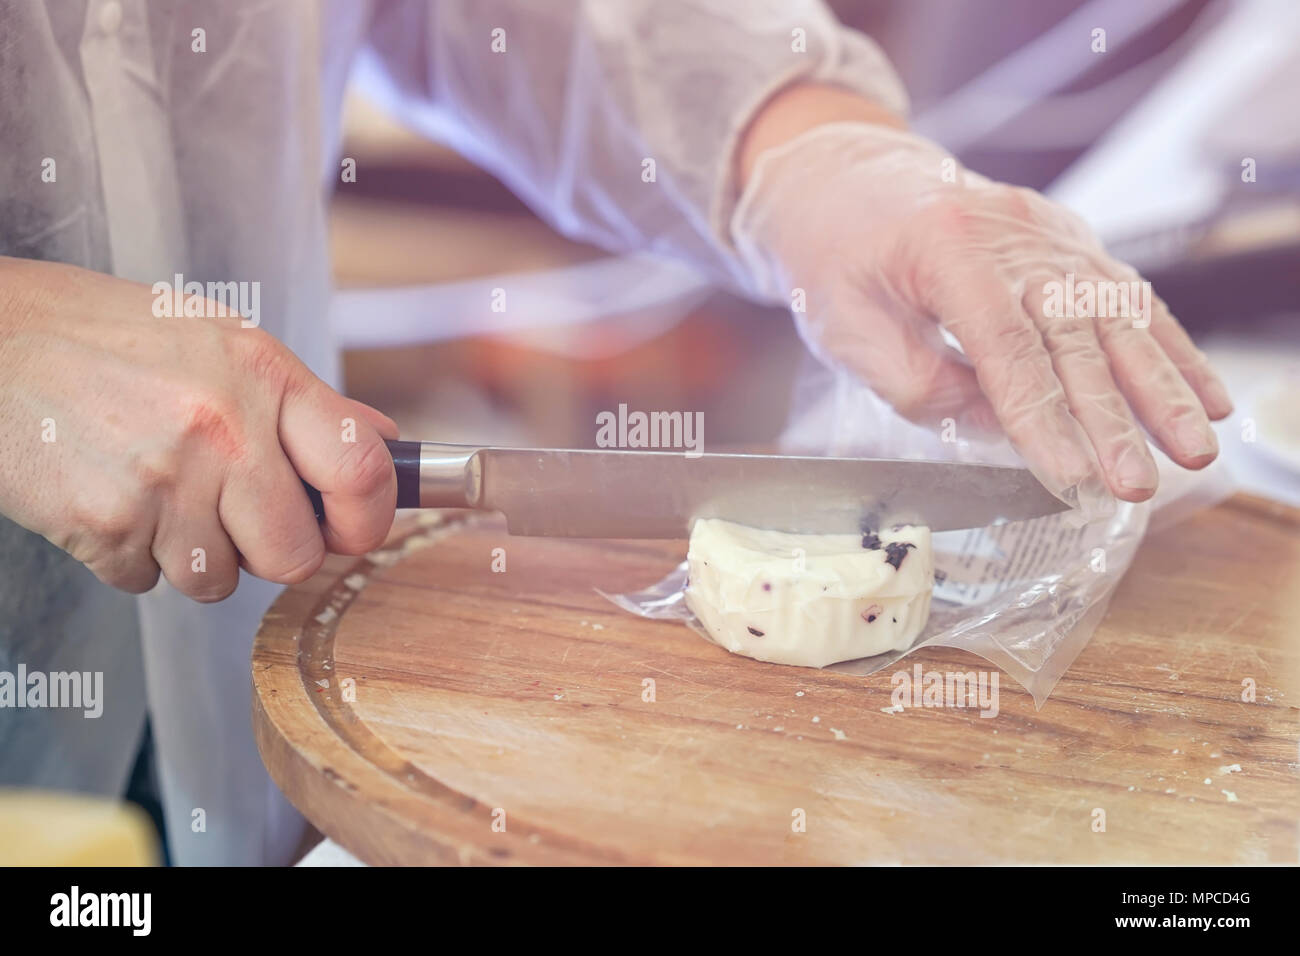 Verkäufer Schnitte, verkauft Käse mit Trüffel, Käse, Köpfe auf Holz zu schneiden. Hände mit Messer schließen. Gastronomische Milchprodukte, realen Szene, essen Markt Stockfoto